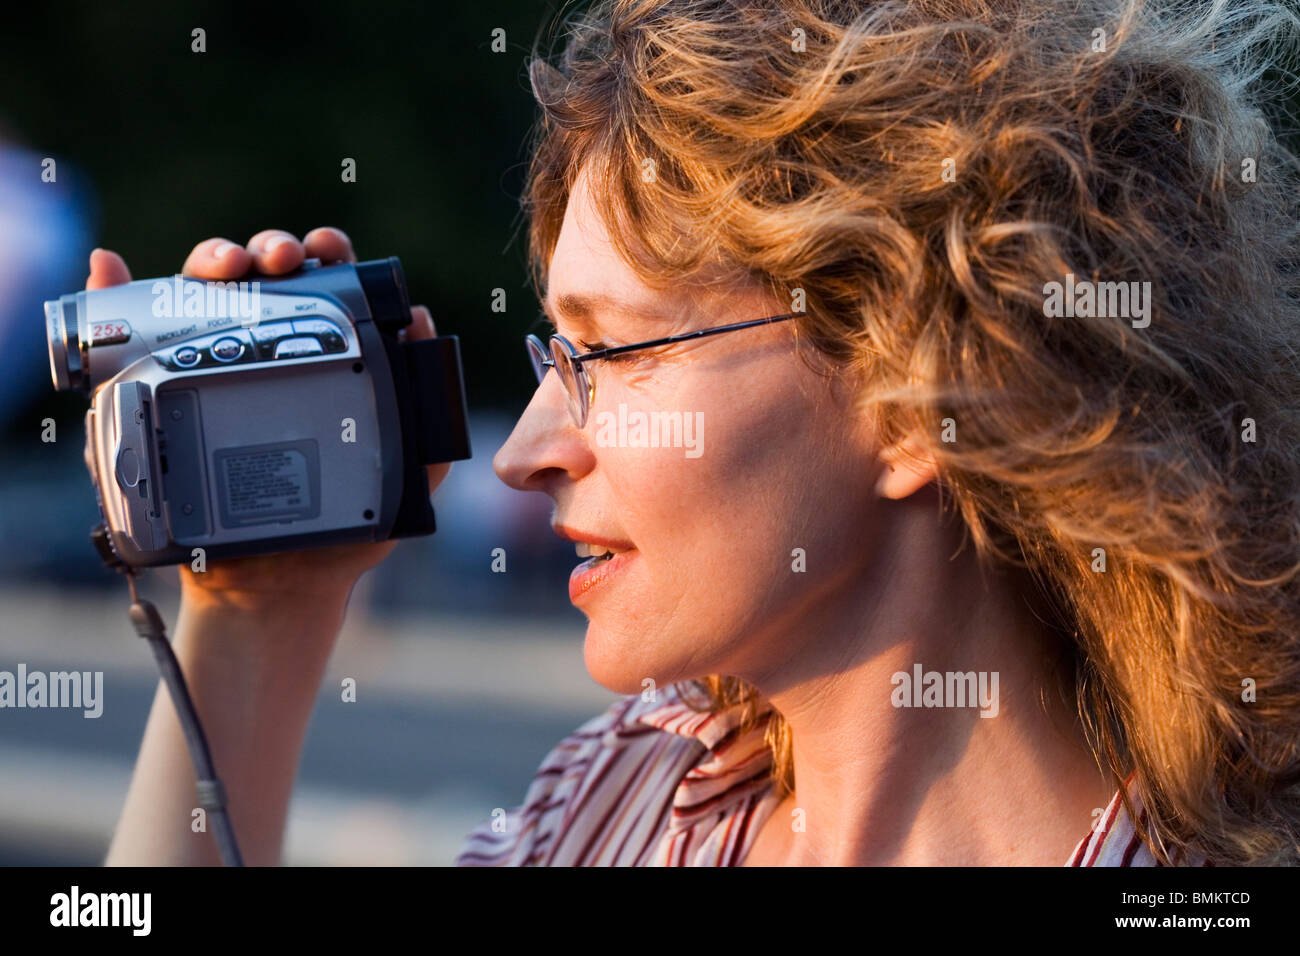 Ein lächelndes Mädchen Aufnahme, digitale Filmkamera in der hand, Rom, Italien Stockfoto